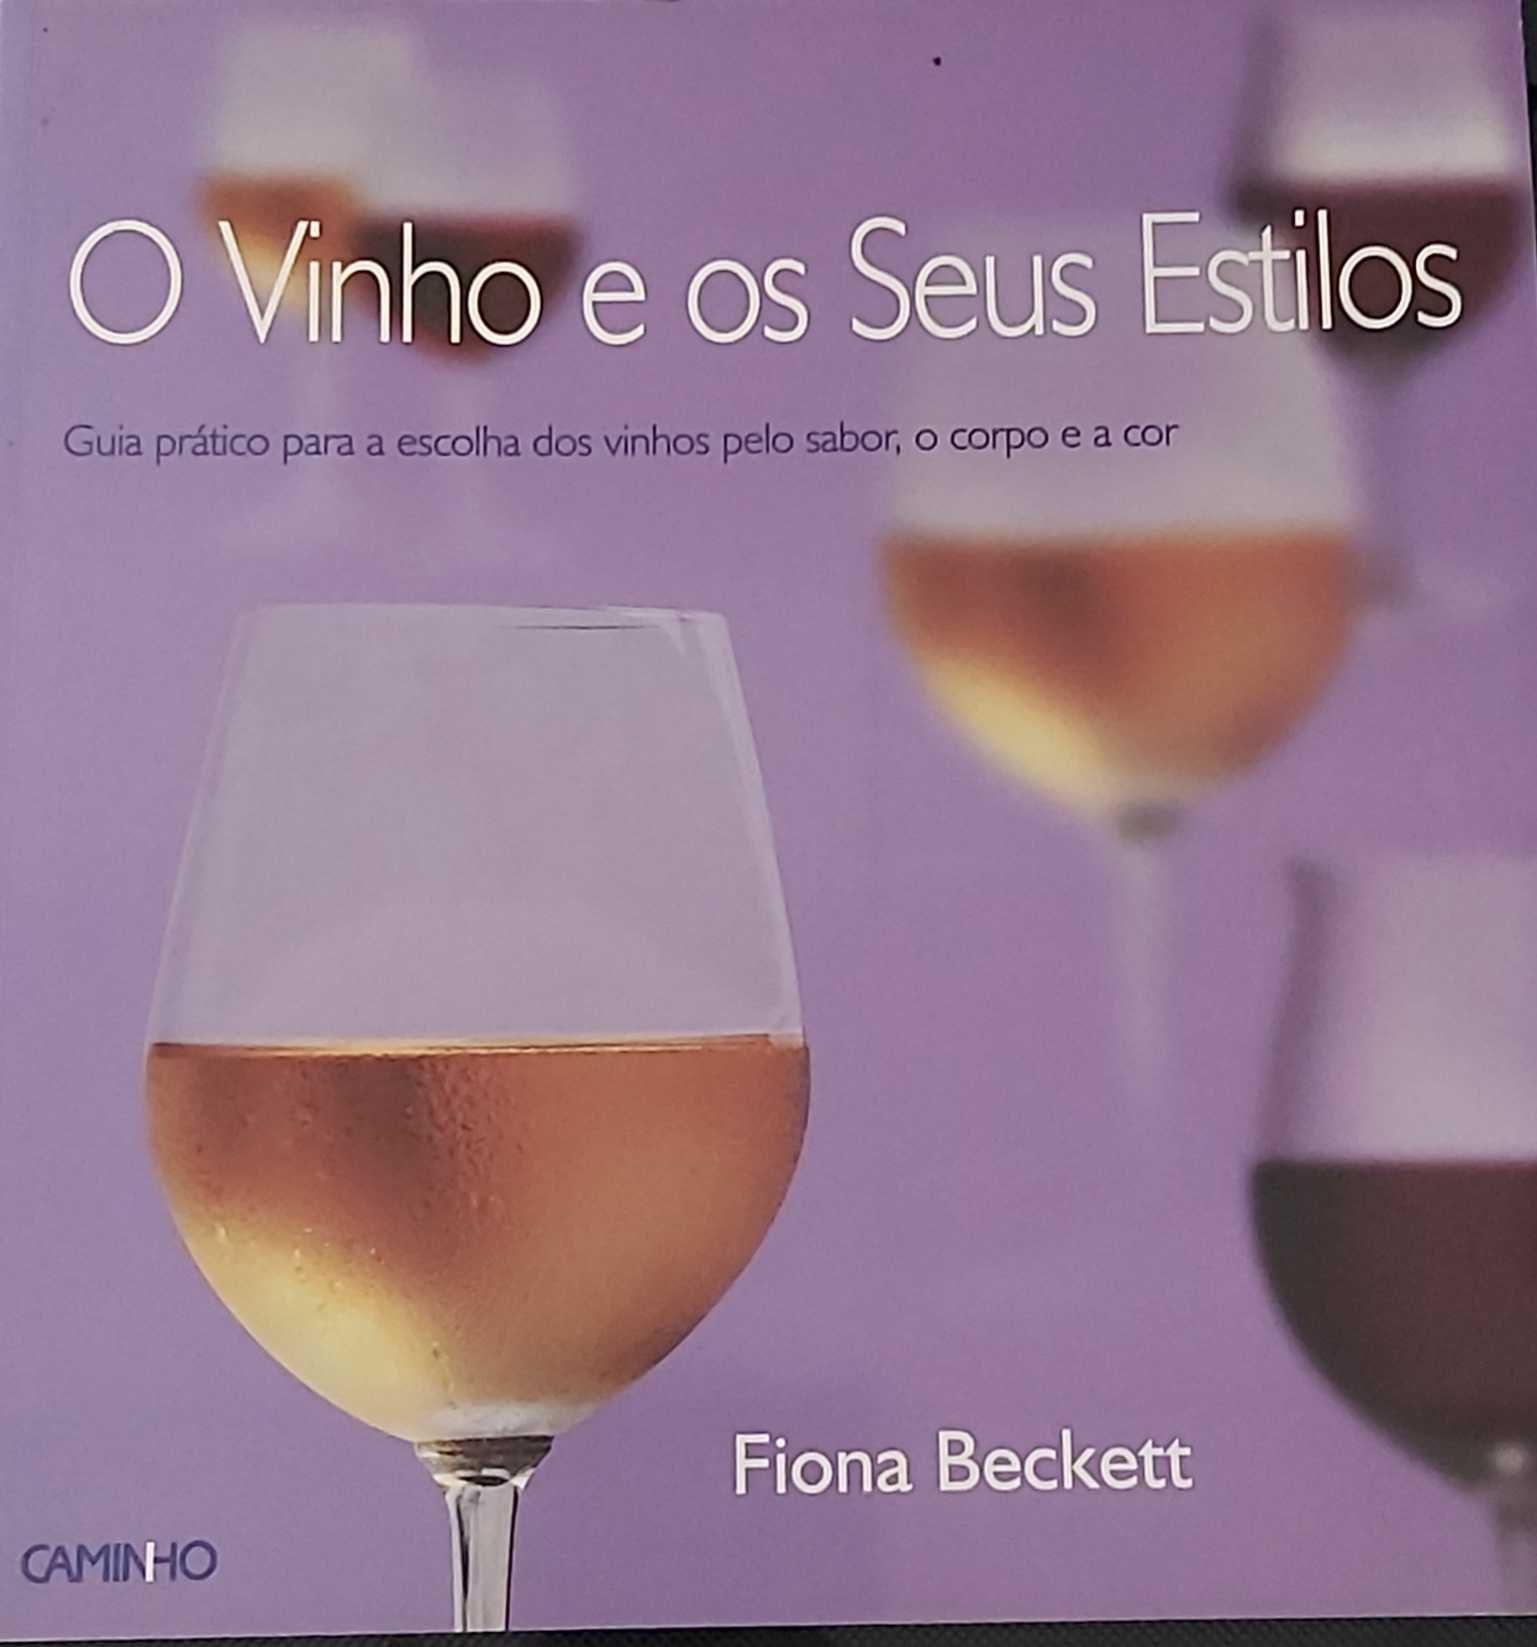 Livro O Vinho e Os Seus Estilos
de Fiona Beckett